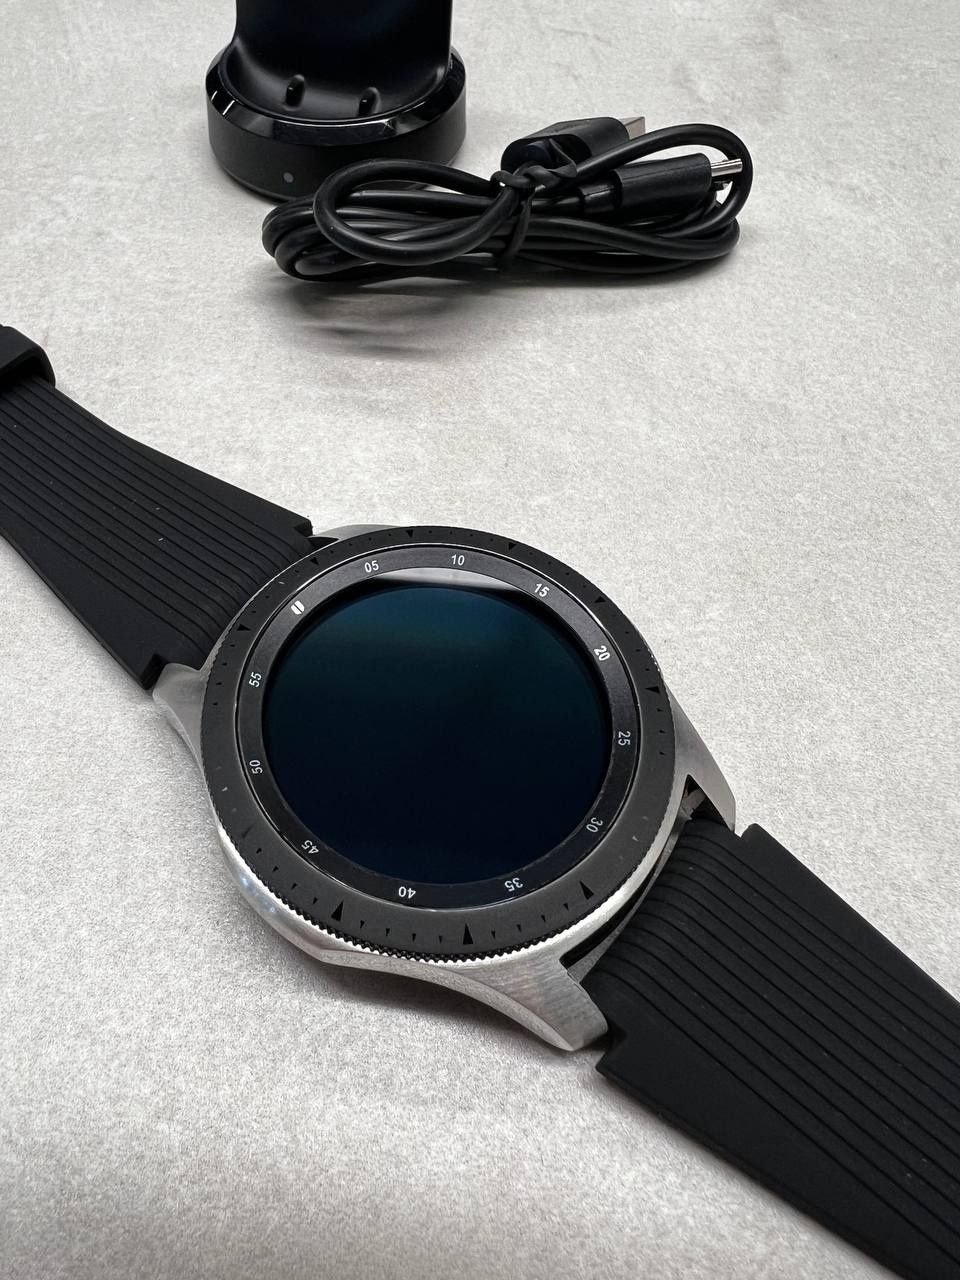 Samsung galaxy watch SM-R800